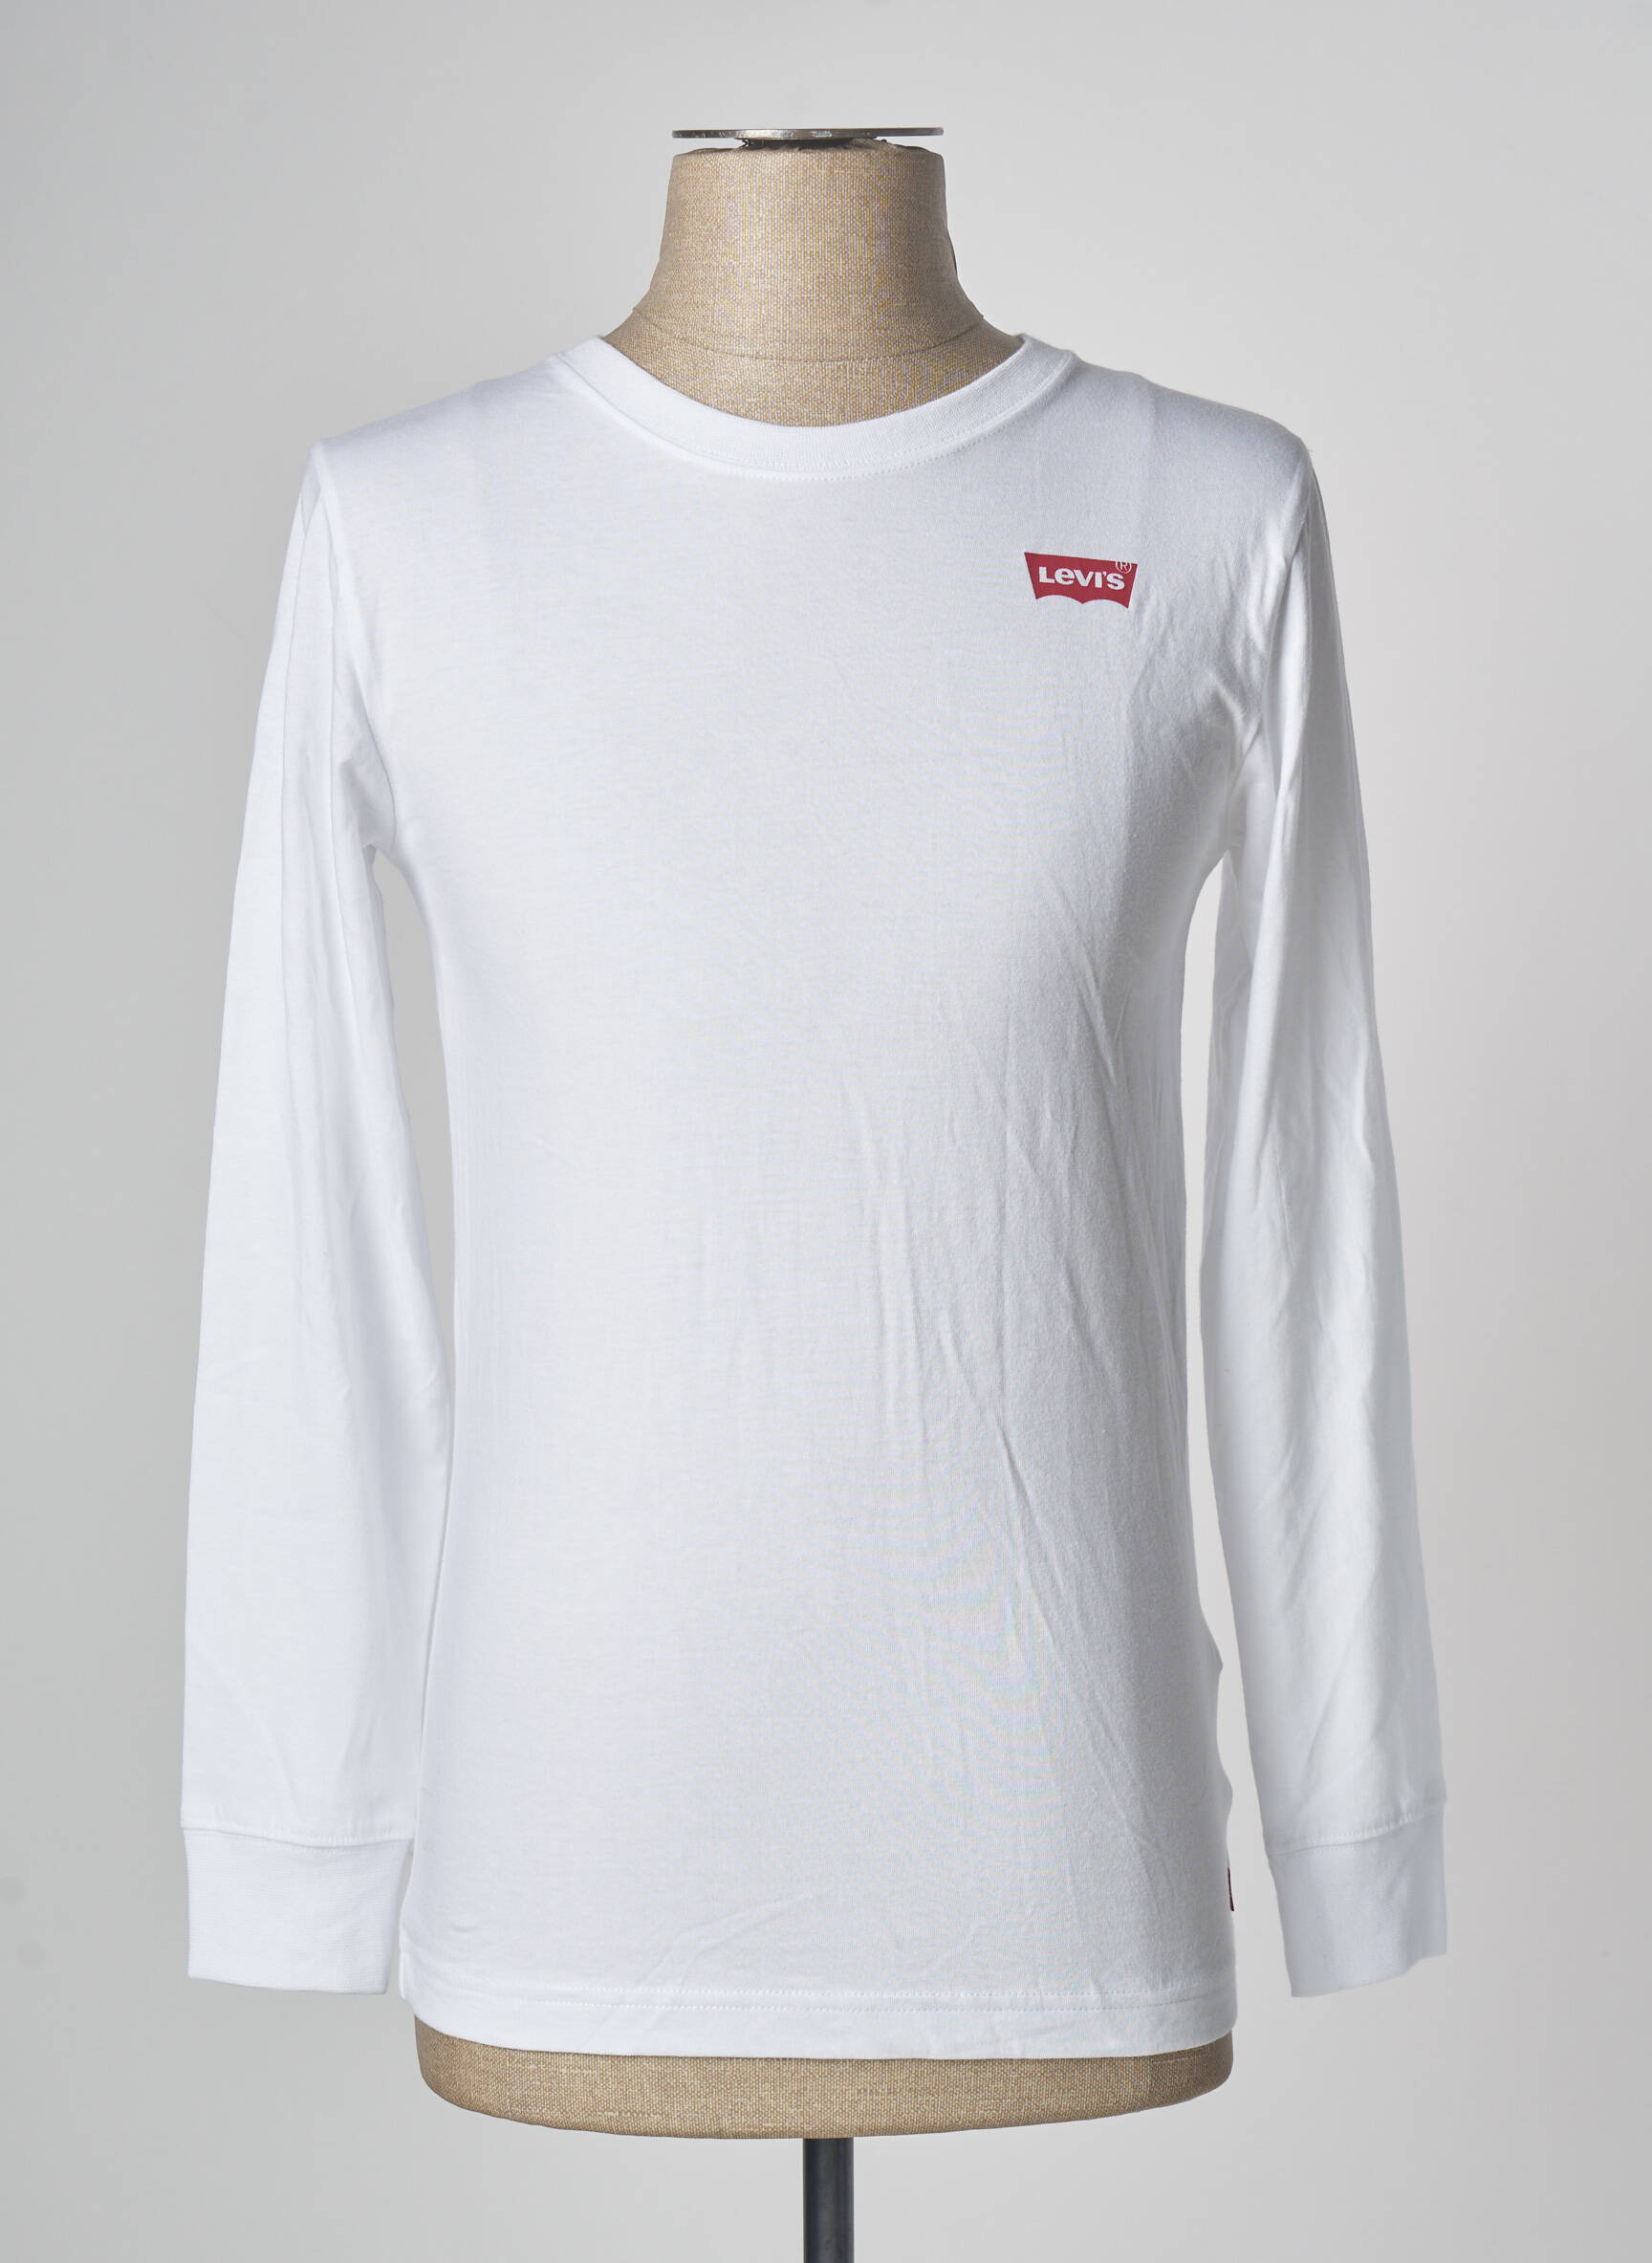 LOUIS VUITTON T-shirt de couleur blanc en soldes pas cher 1557490-blanc0 -  Modz